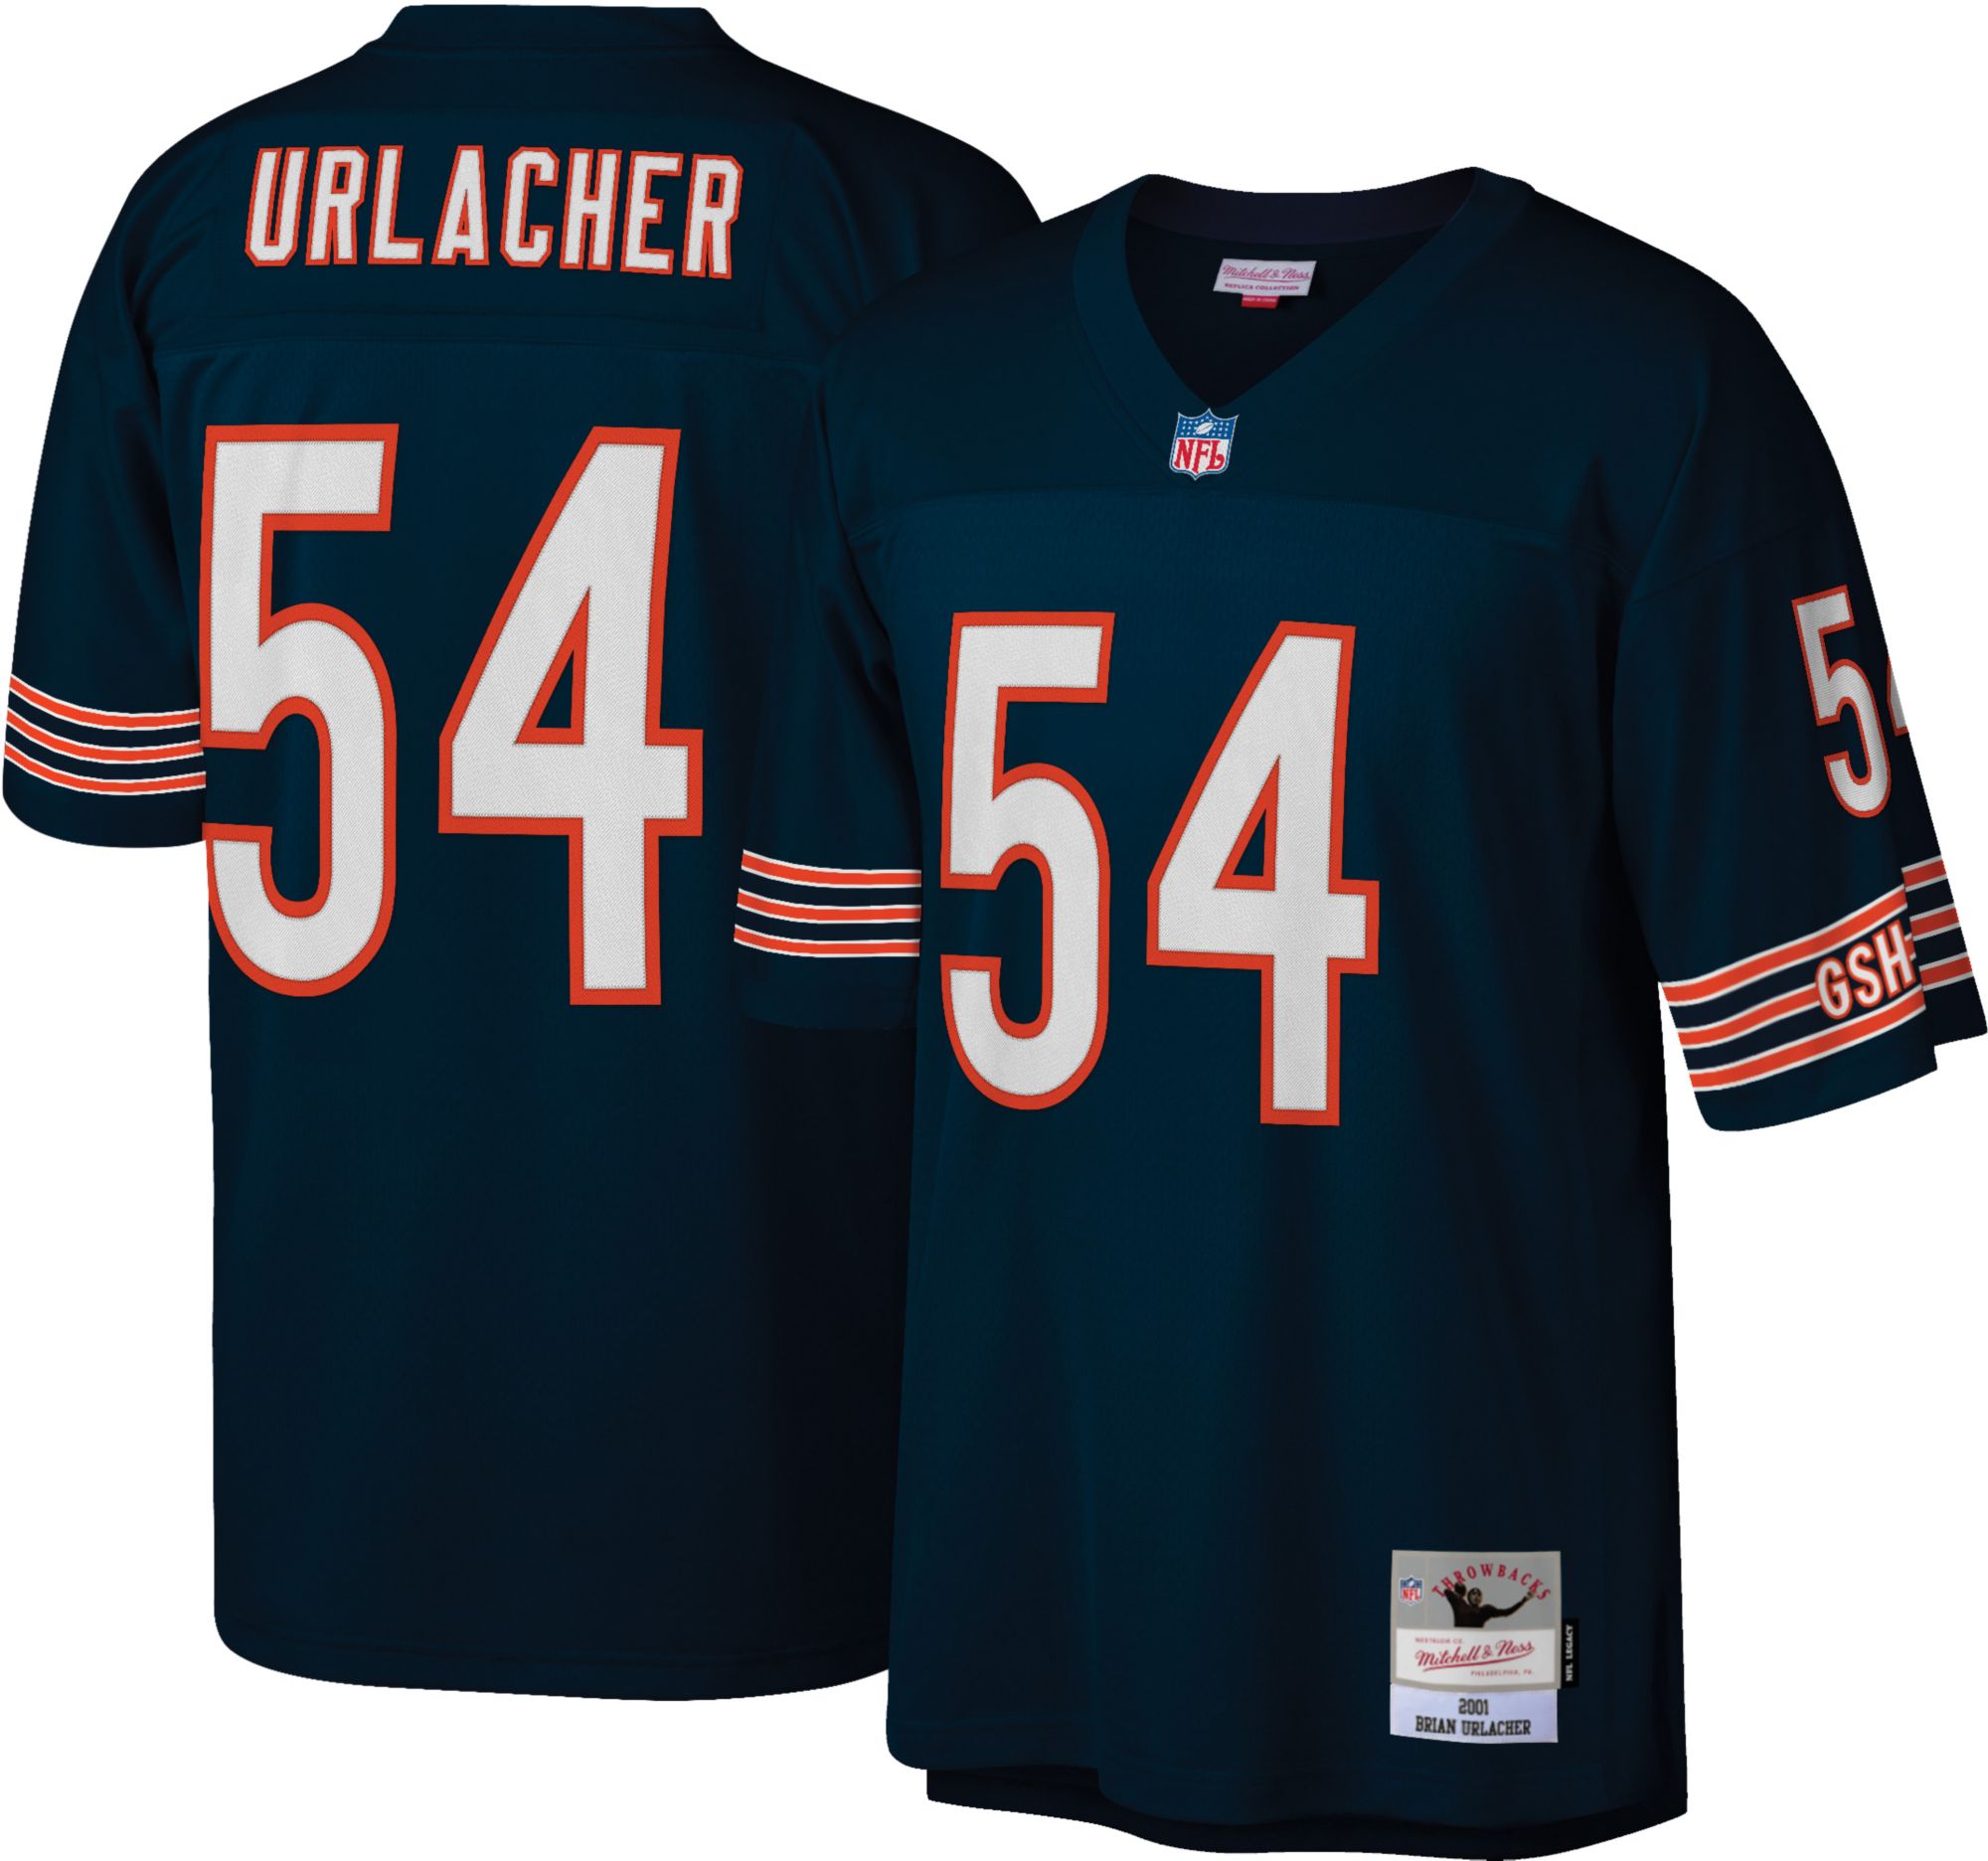 urlacher bears jersey